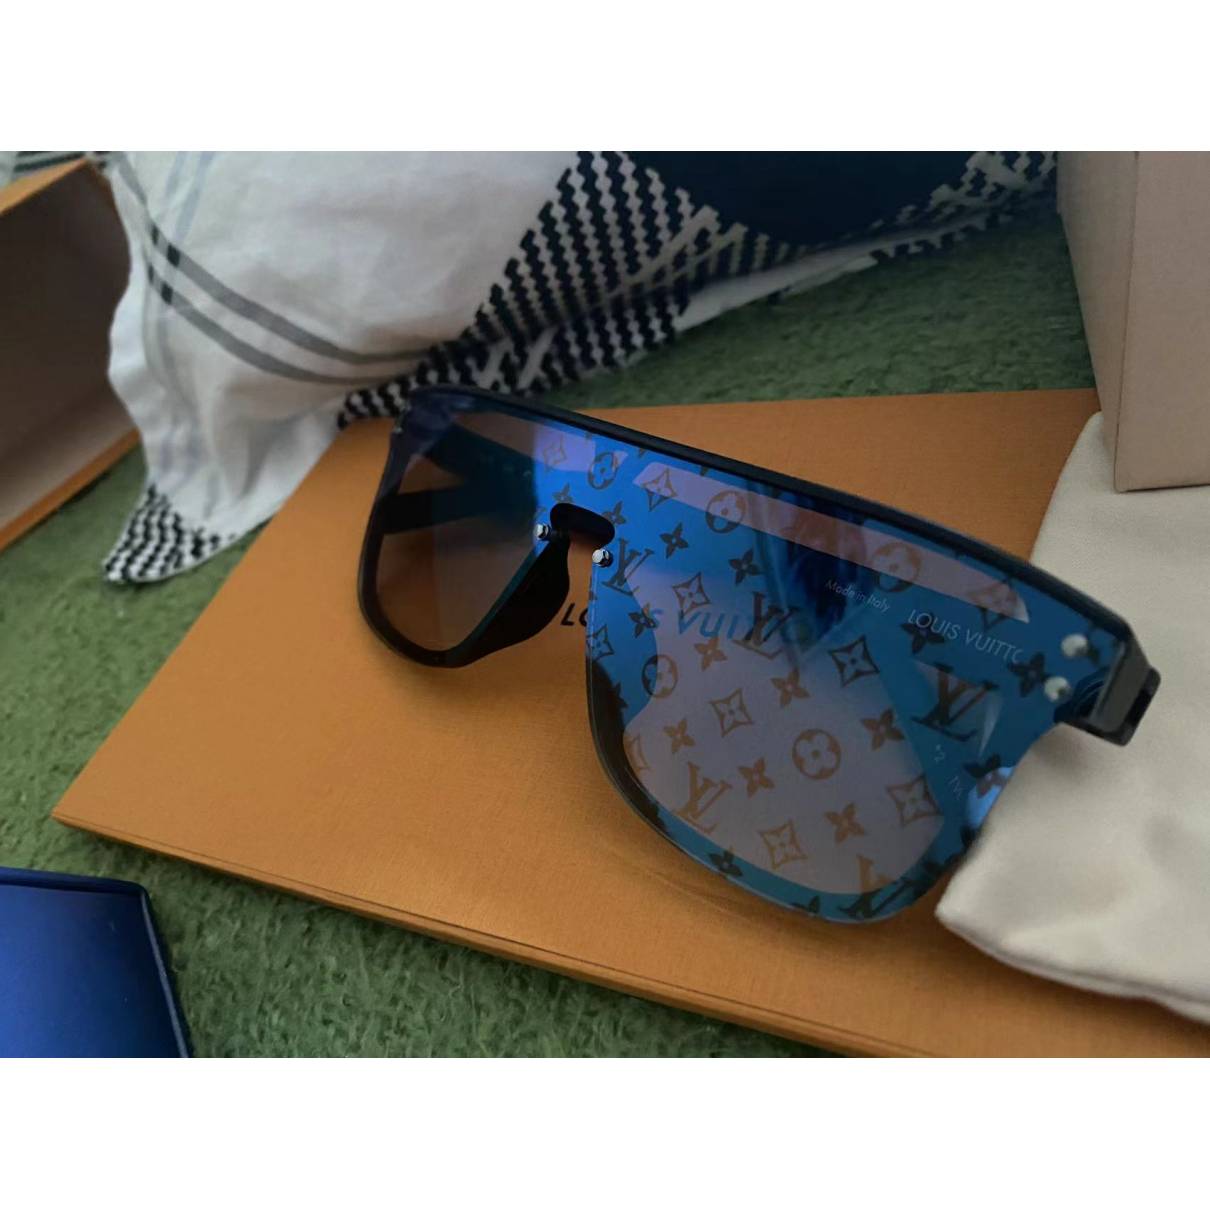 Lunettes Louis Vuitton pour Homme  Achat / Vente d'accessoires LV ! -  Vestiaire Collective